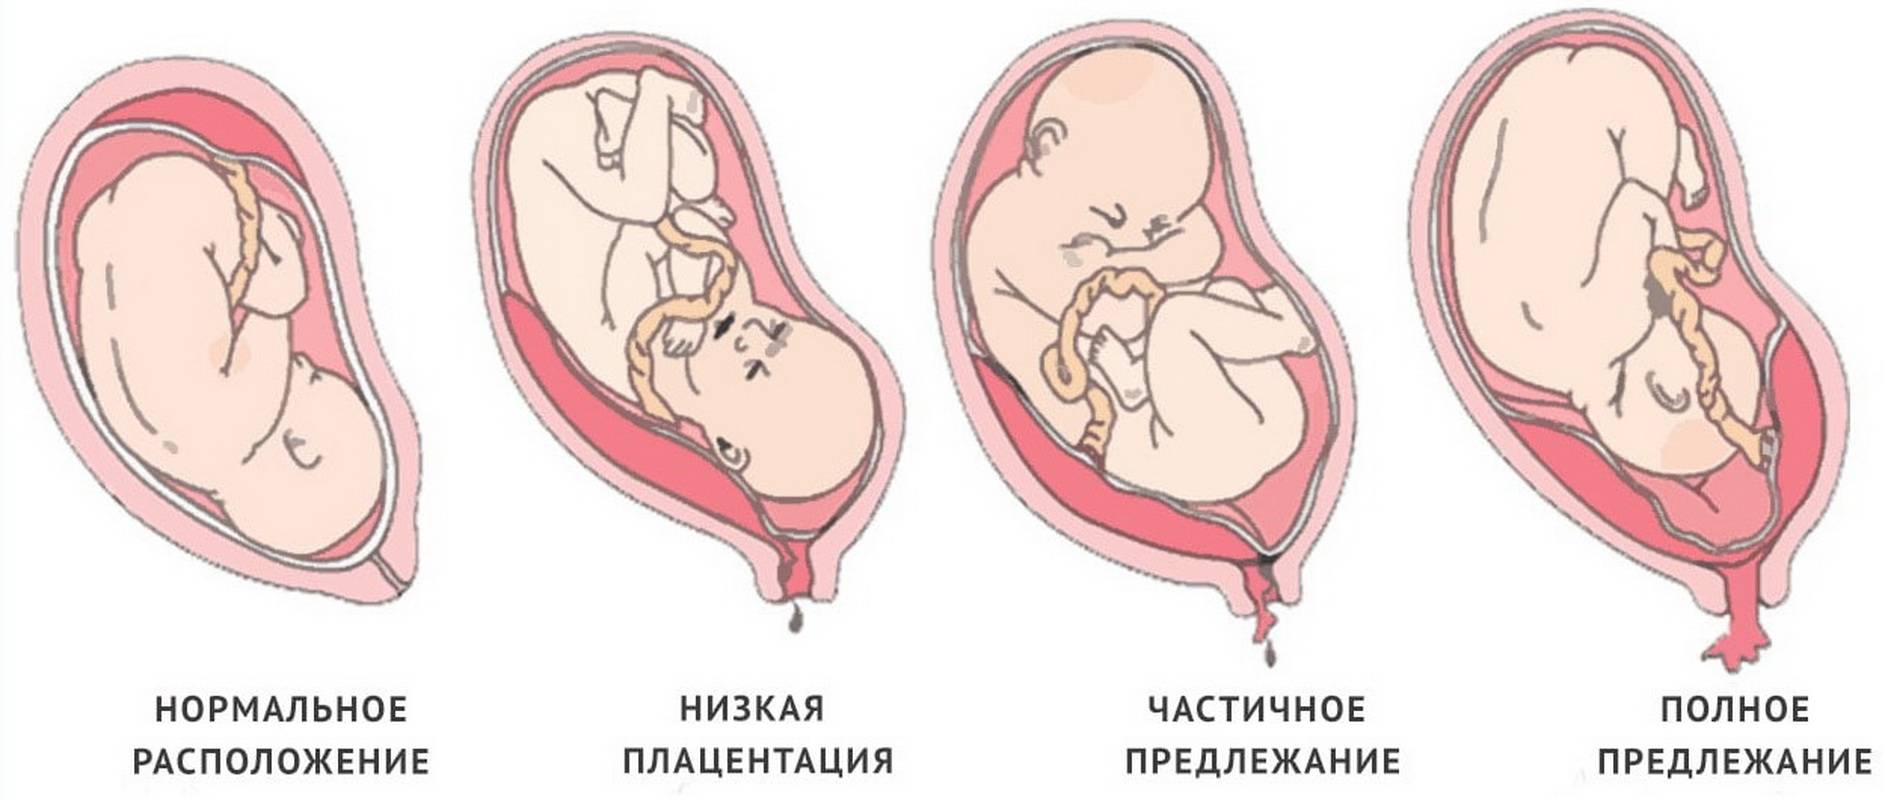 Краевое предлежание плаценты (20 фото): что это такое, чем опасно крайнее расположение, отзывы беременных